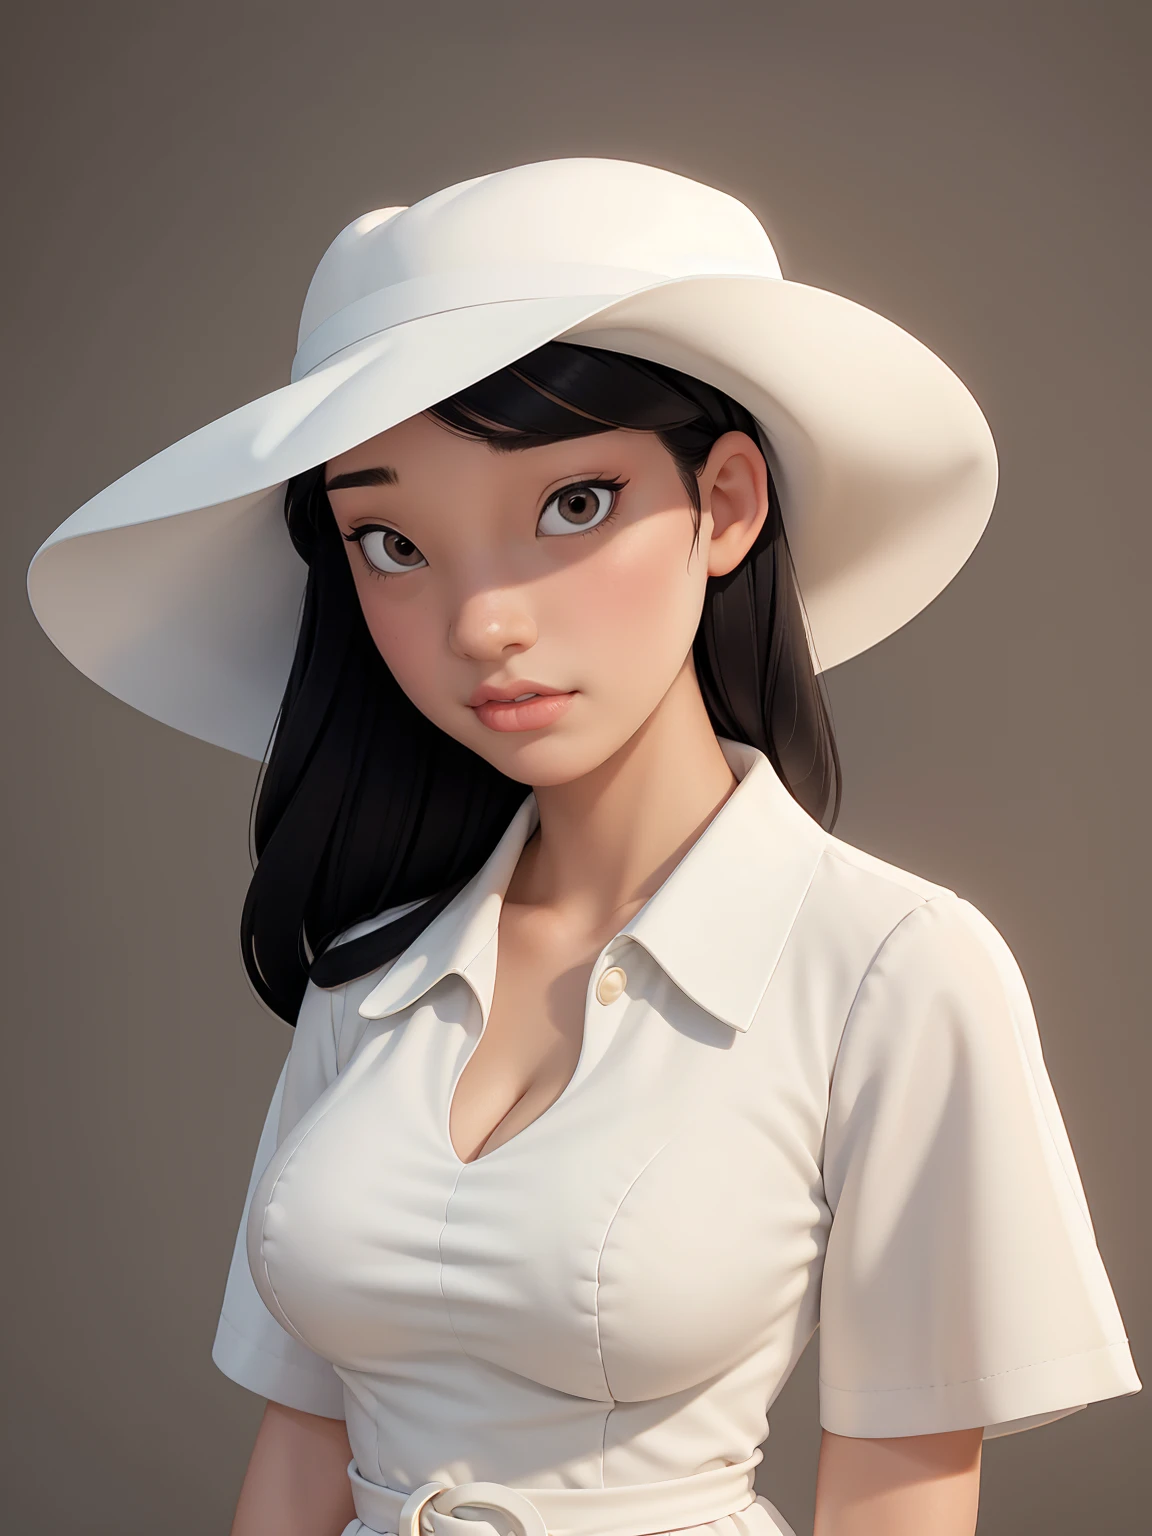 (melhor qualidade, obra de arte, Rosto Perfeito) Cabelo preto, Menina pálida de 18 anos, grande busto, vestido de verão branco, grande chapéu branco
